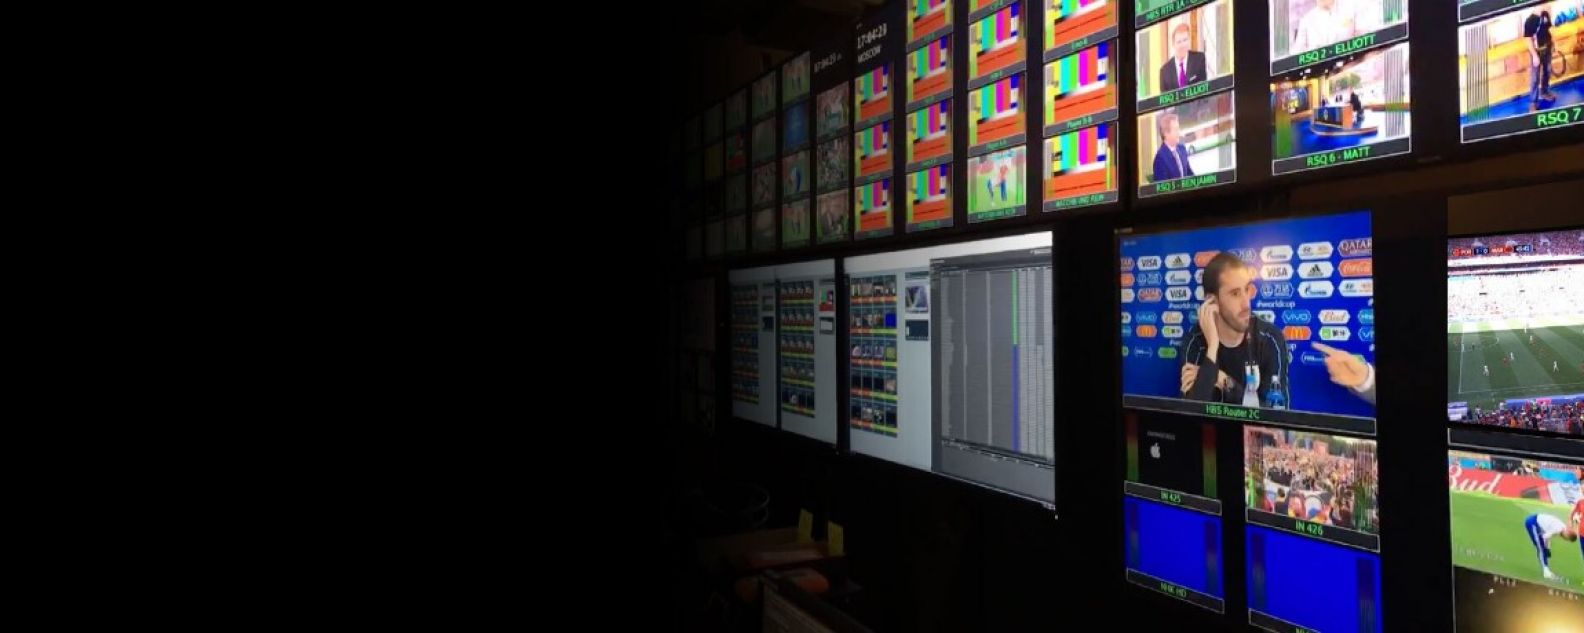 Gran pared de monitores con retransmisiones deportivas y entrevistas